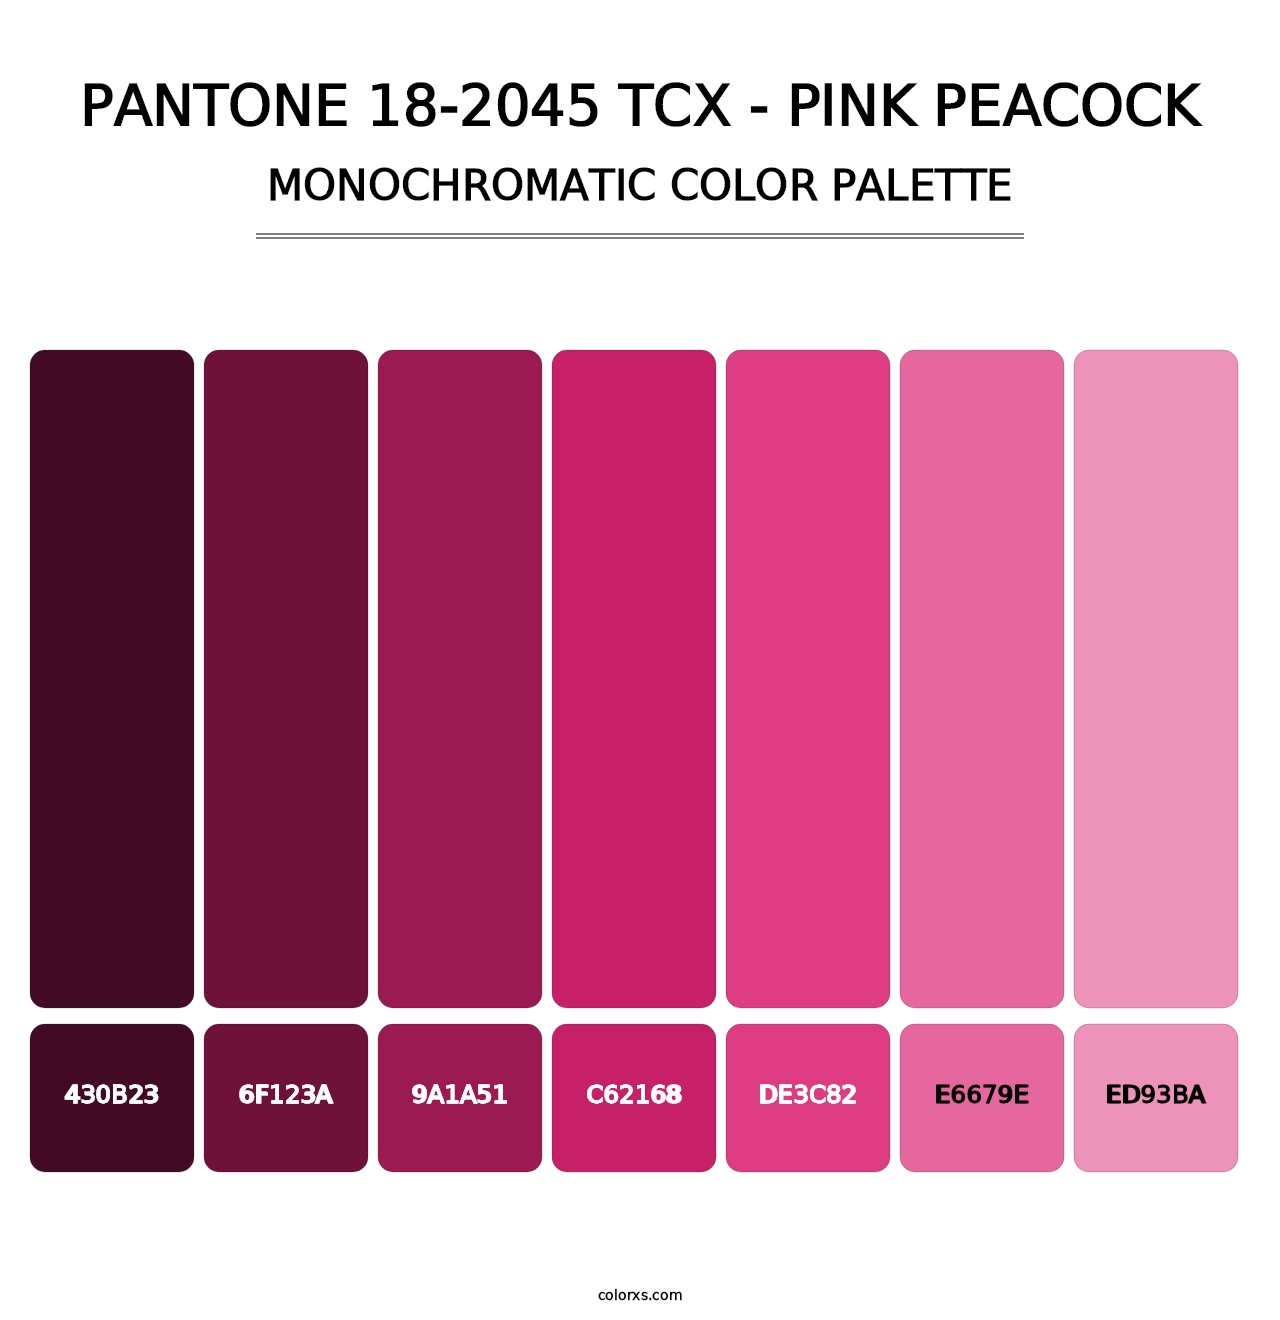 PANTONE 18-2045 TCX - Pink Peacock - Monochromatic Color Palette